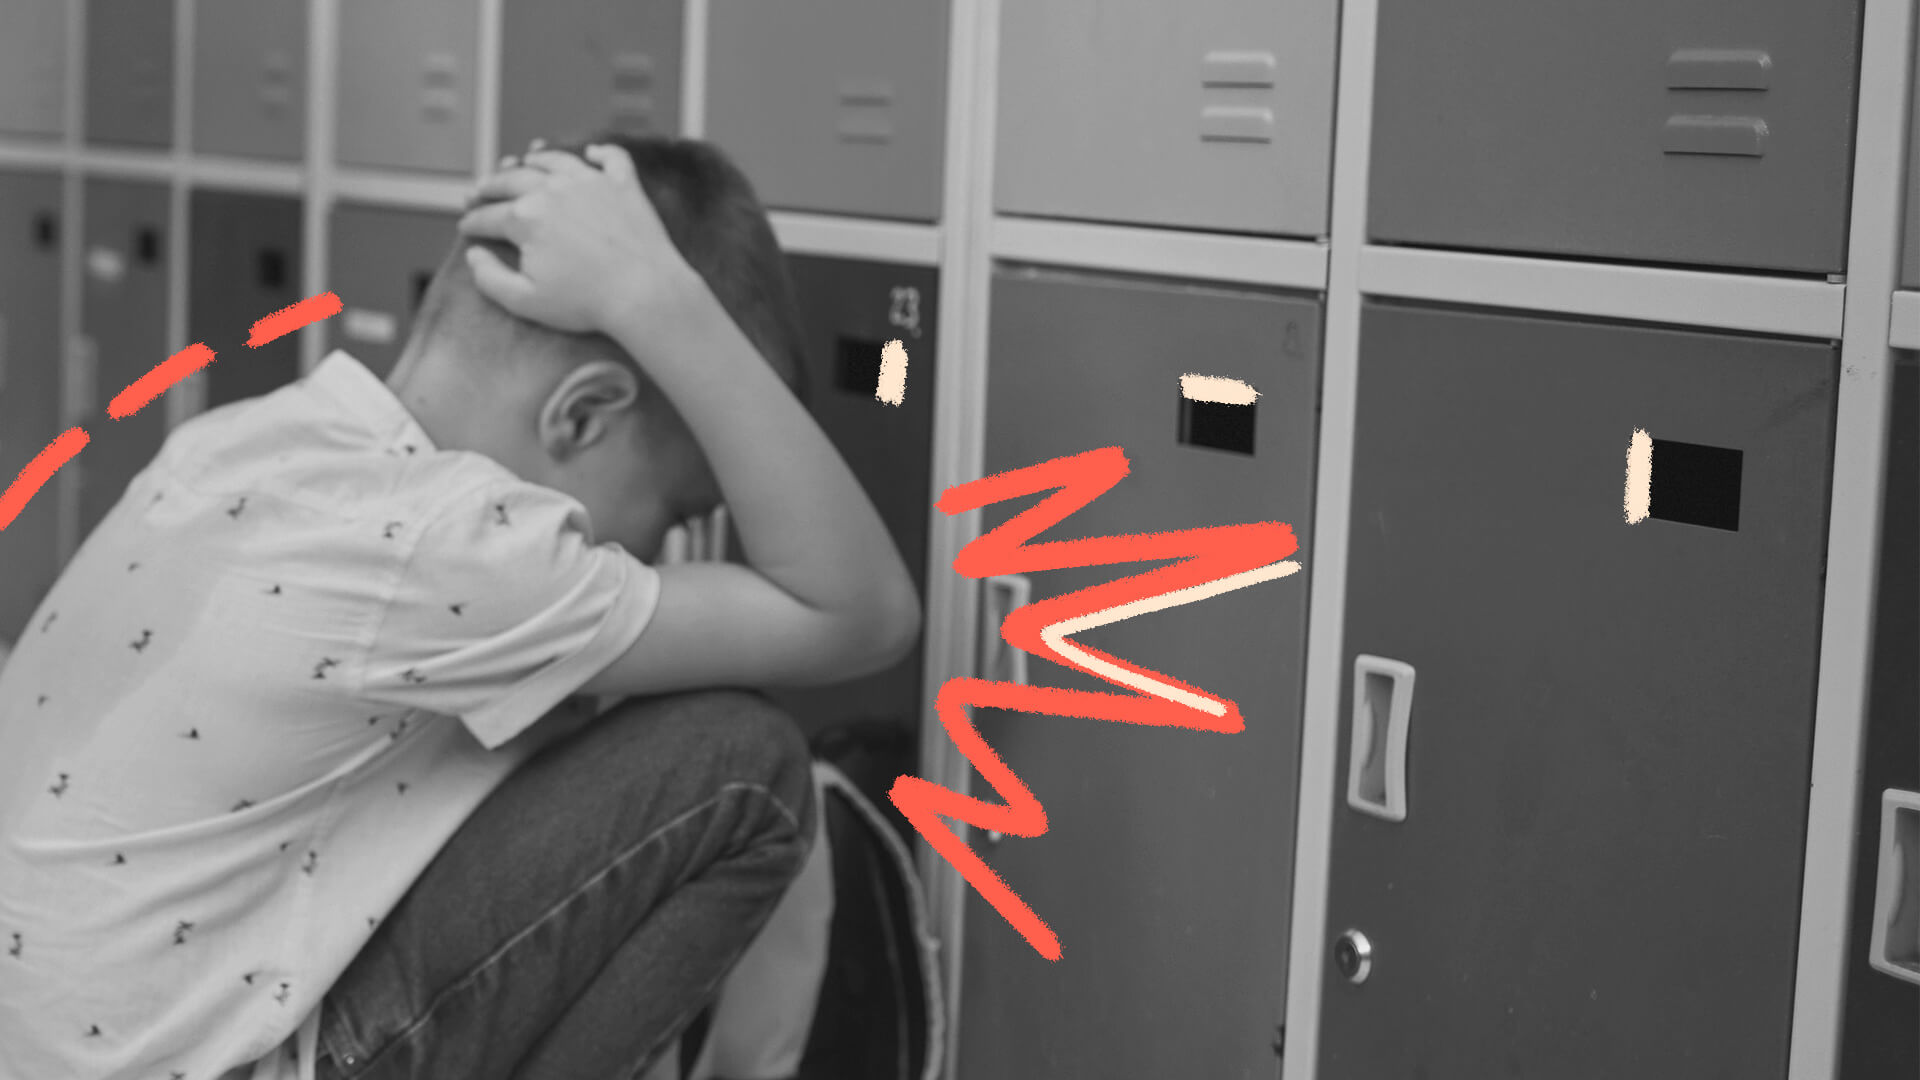 Imagem em preto e branco de um menino protegendo a cabeça. Ele está agachado na frente de armários escolares.